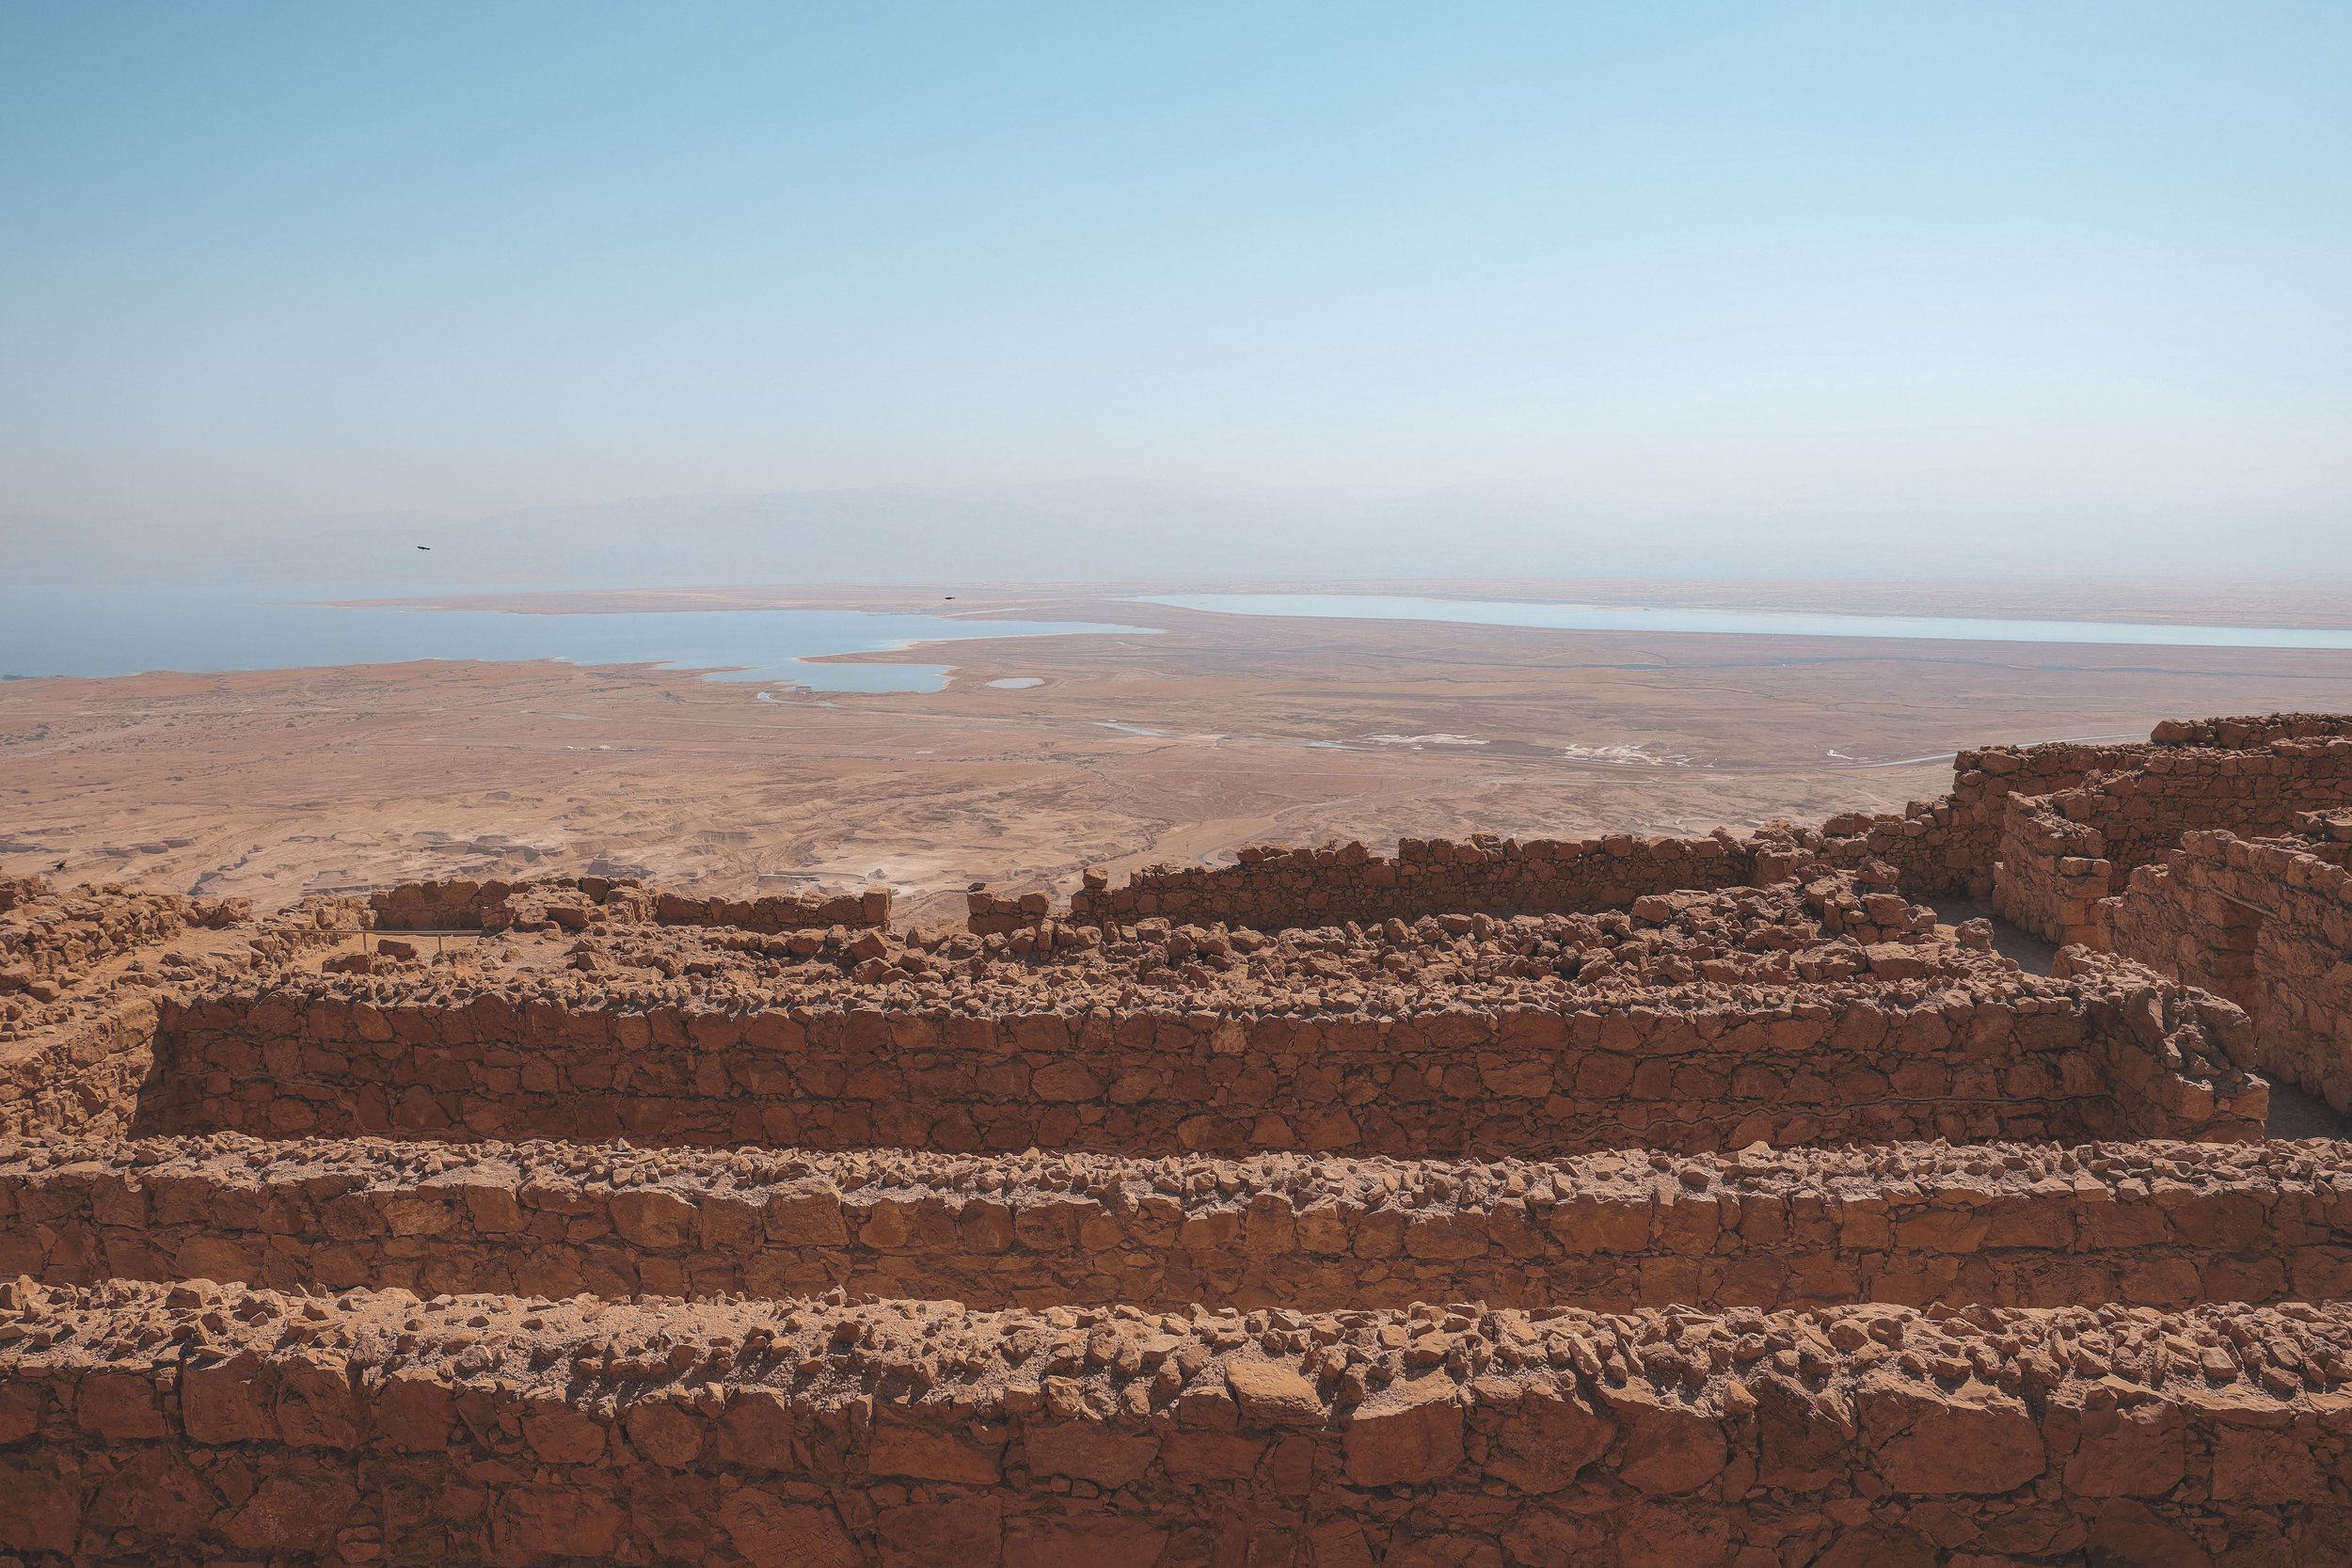 The old ruins in Masada - Dead Sea - Israel